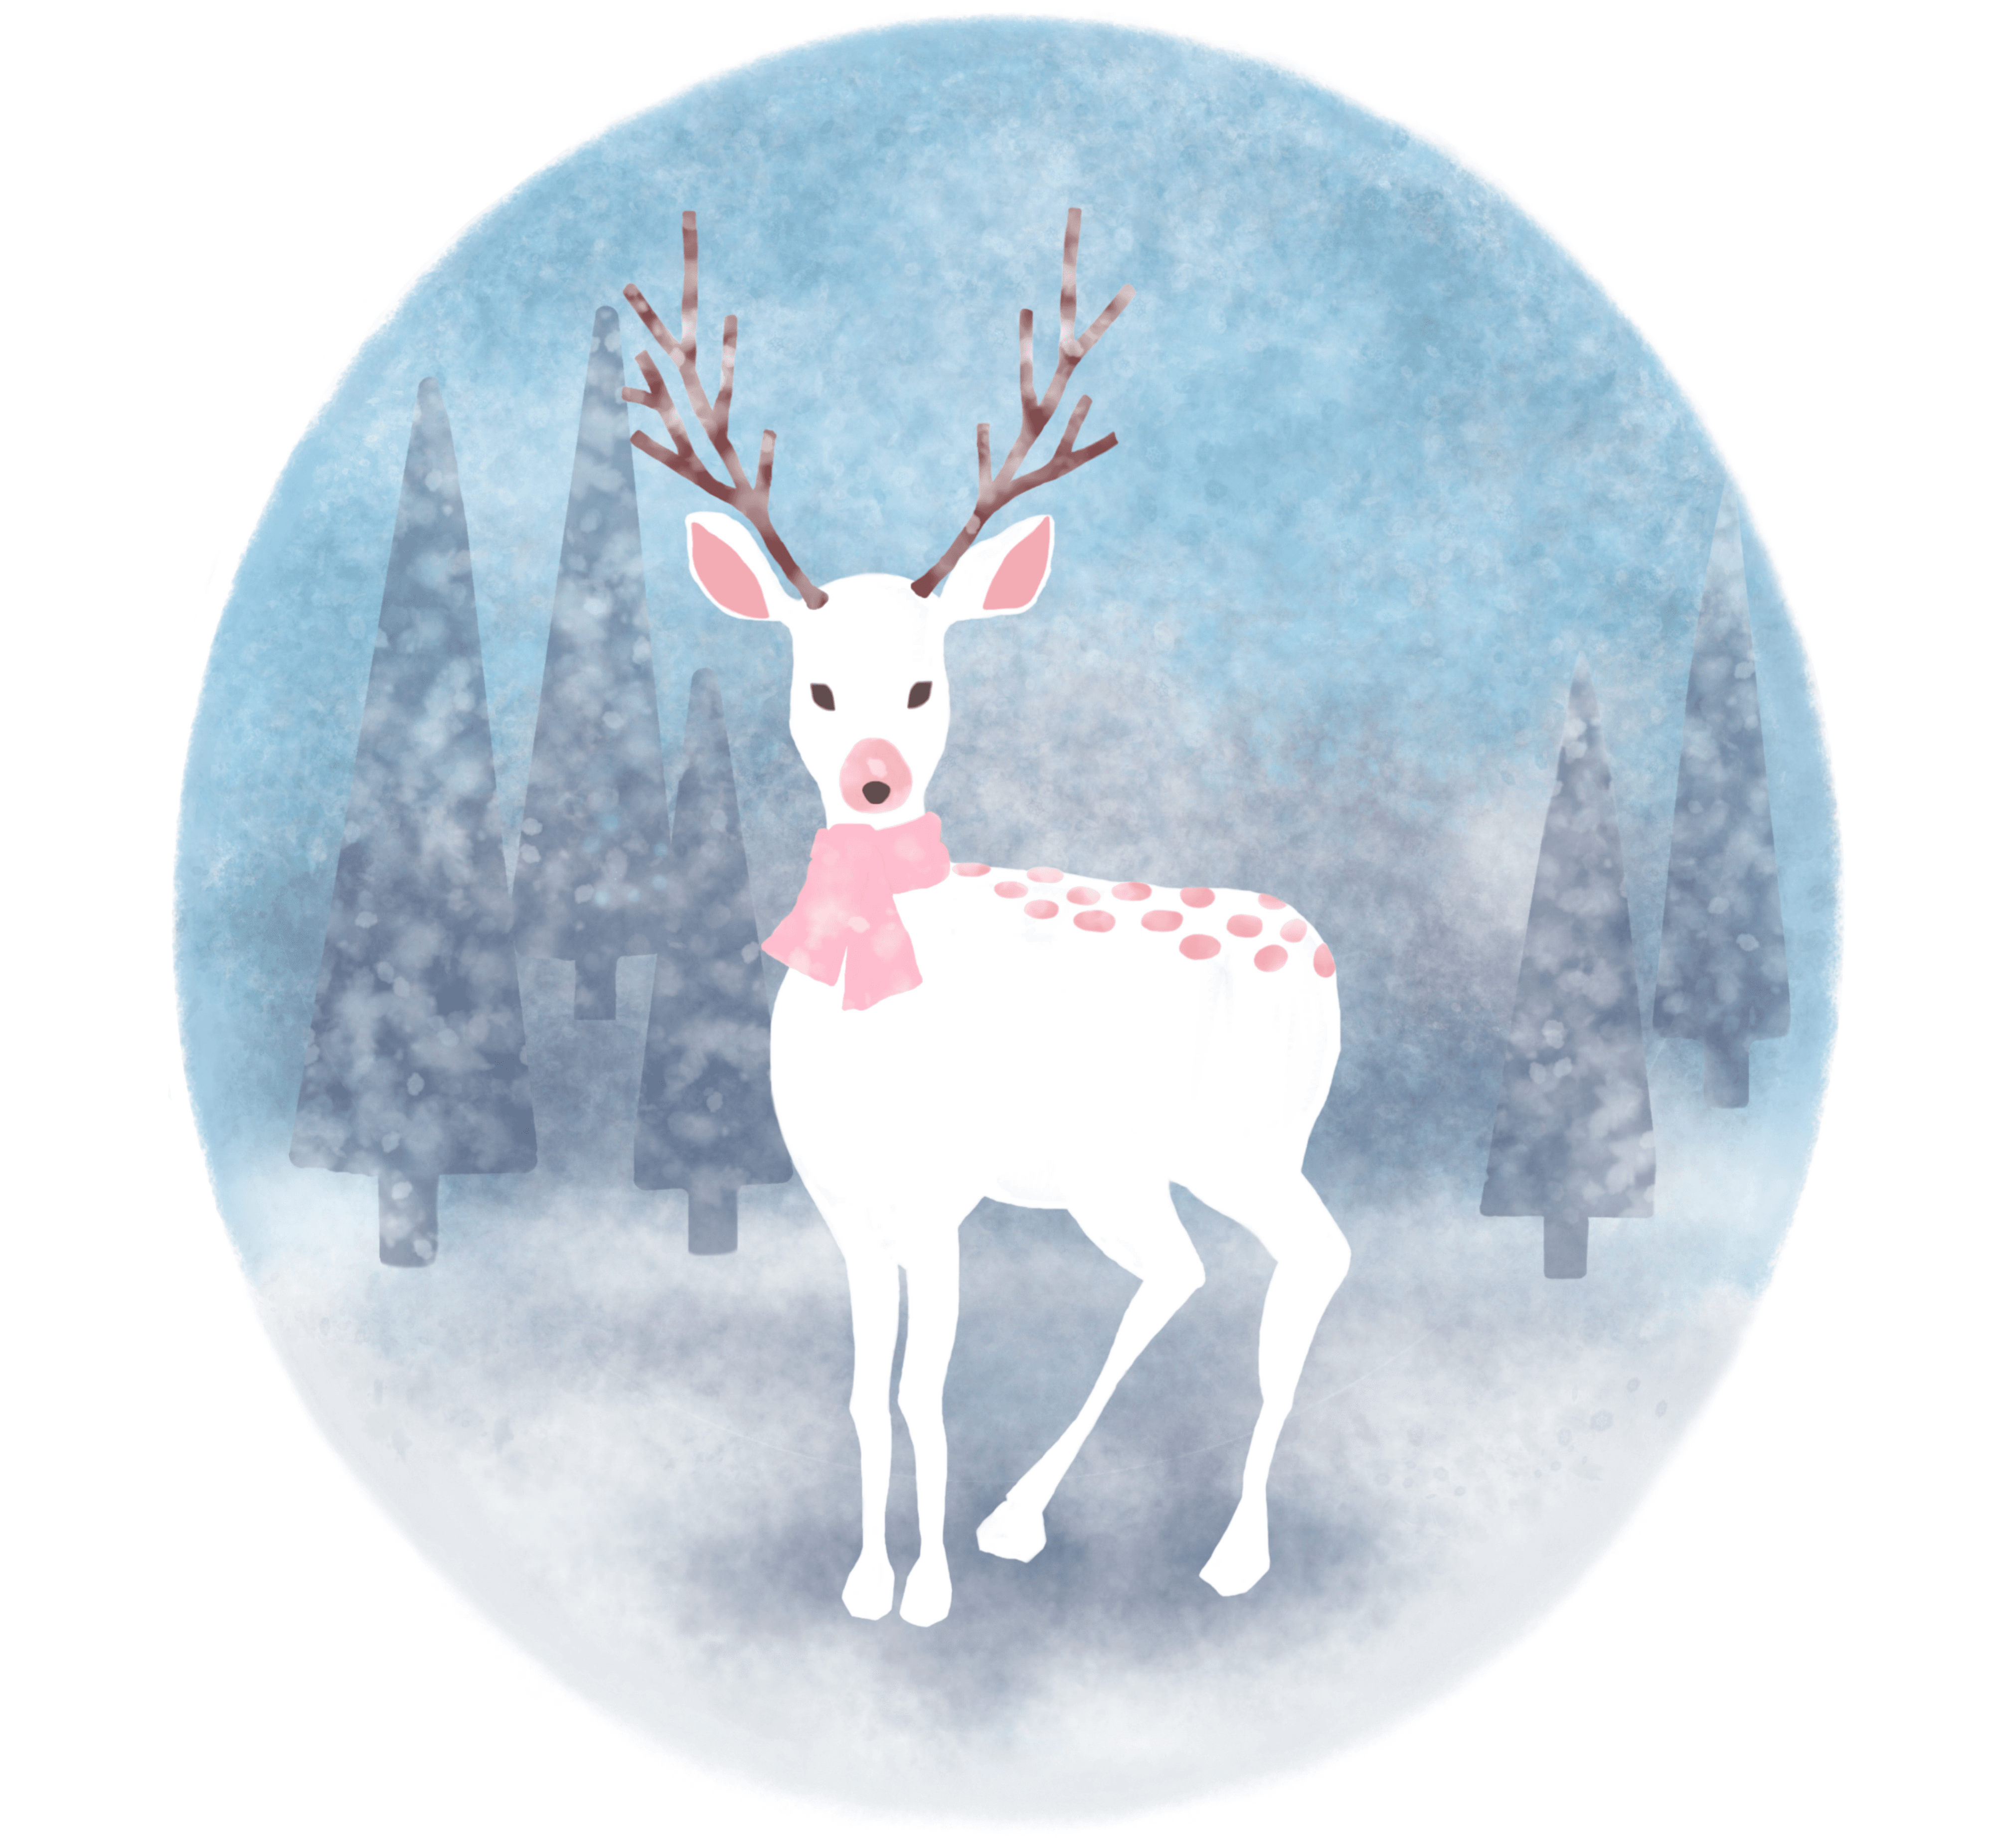 The Snow Deer